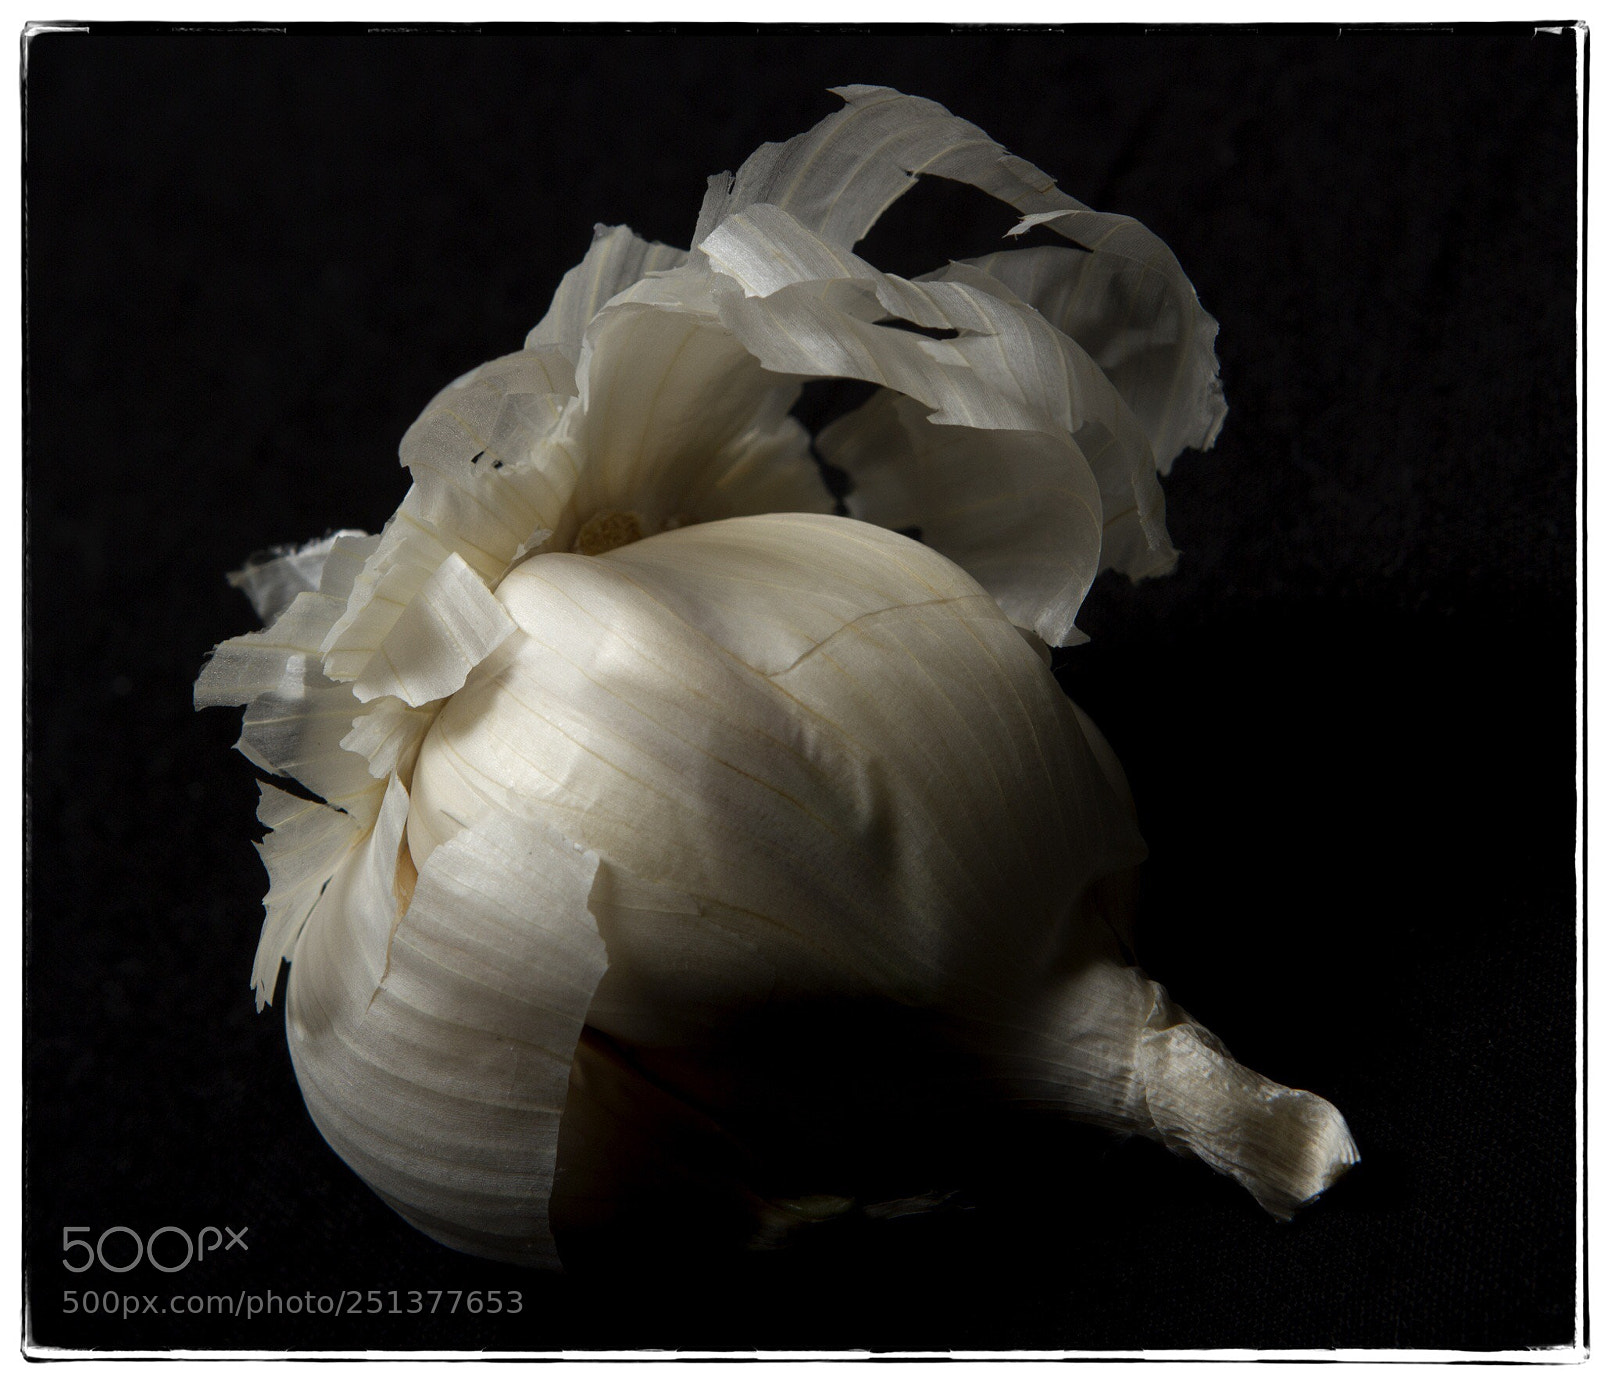 Canon EOS 7D sample photo. Garlic clove. photography